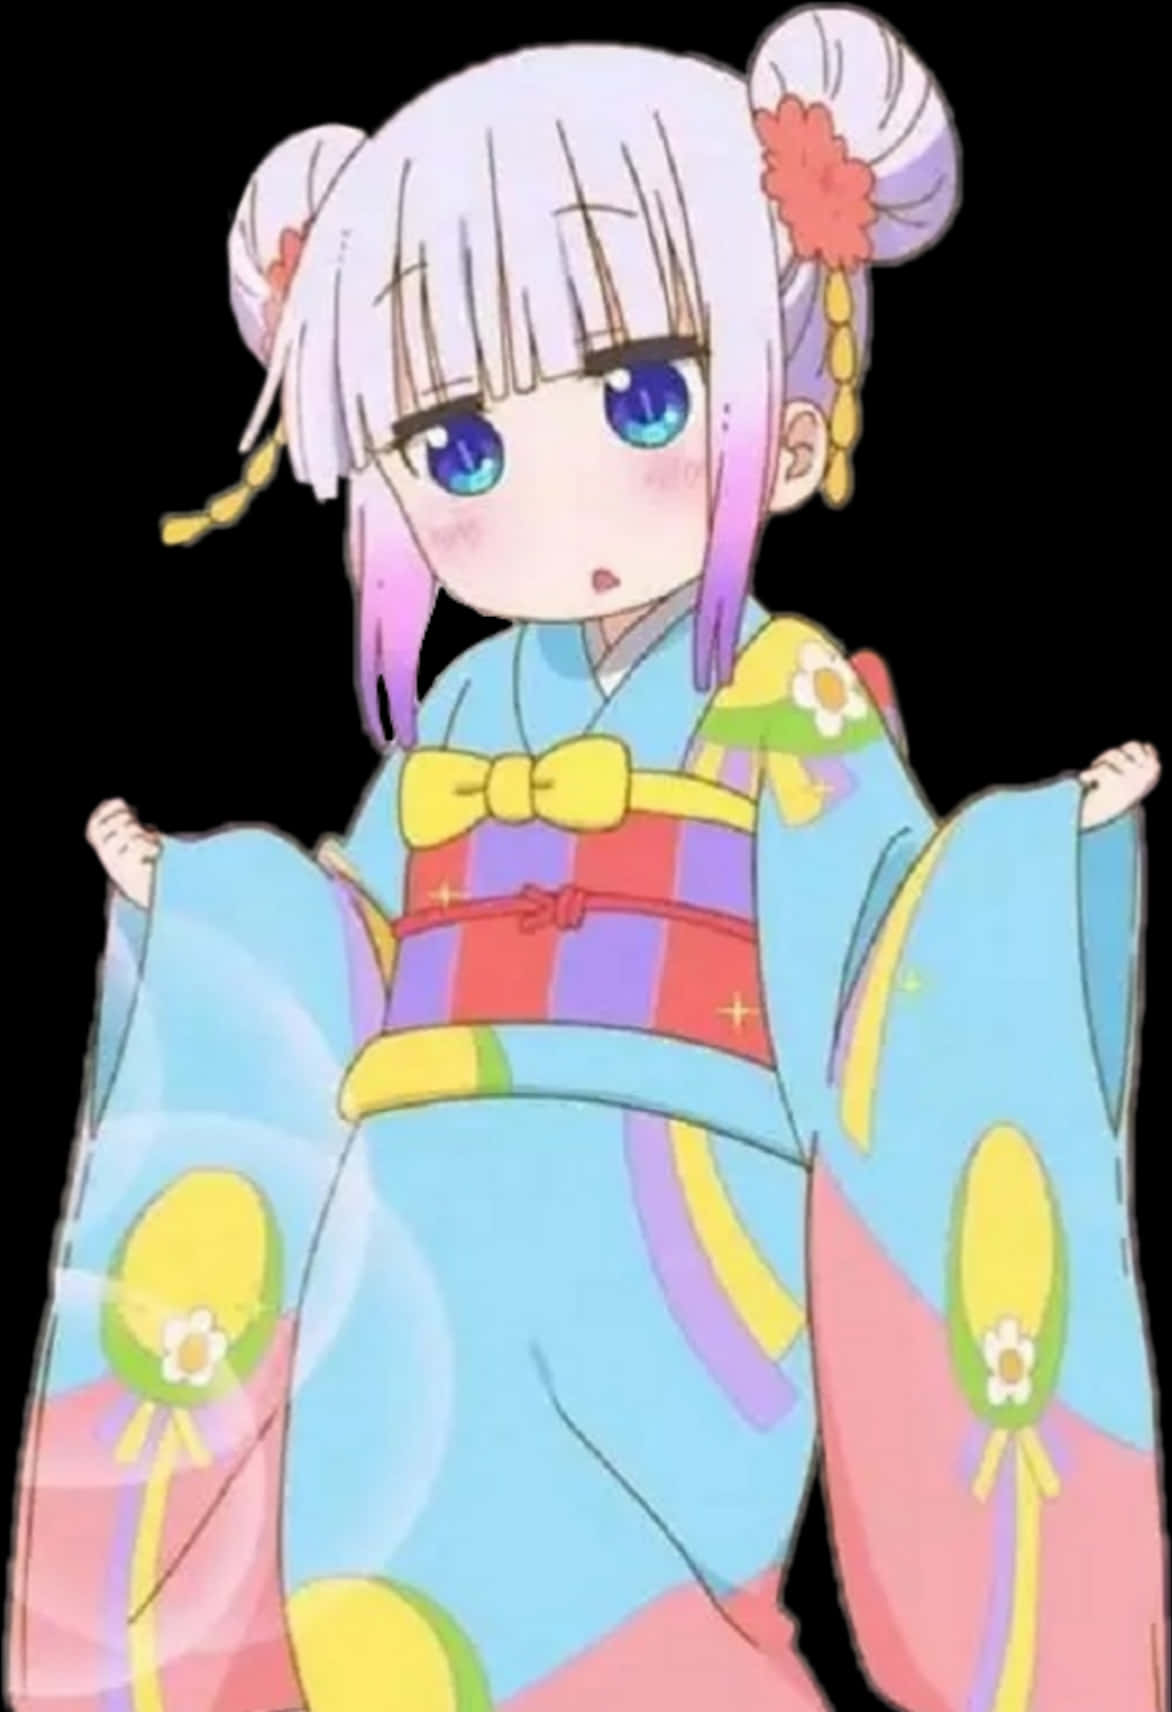 A Cartoon Of A Girl In A Kimono